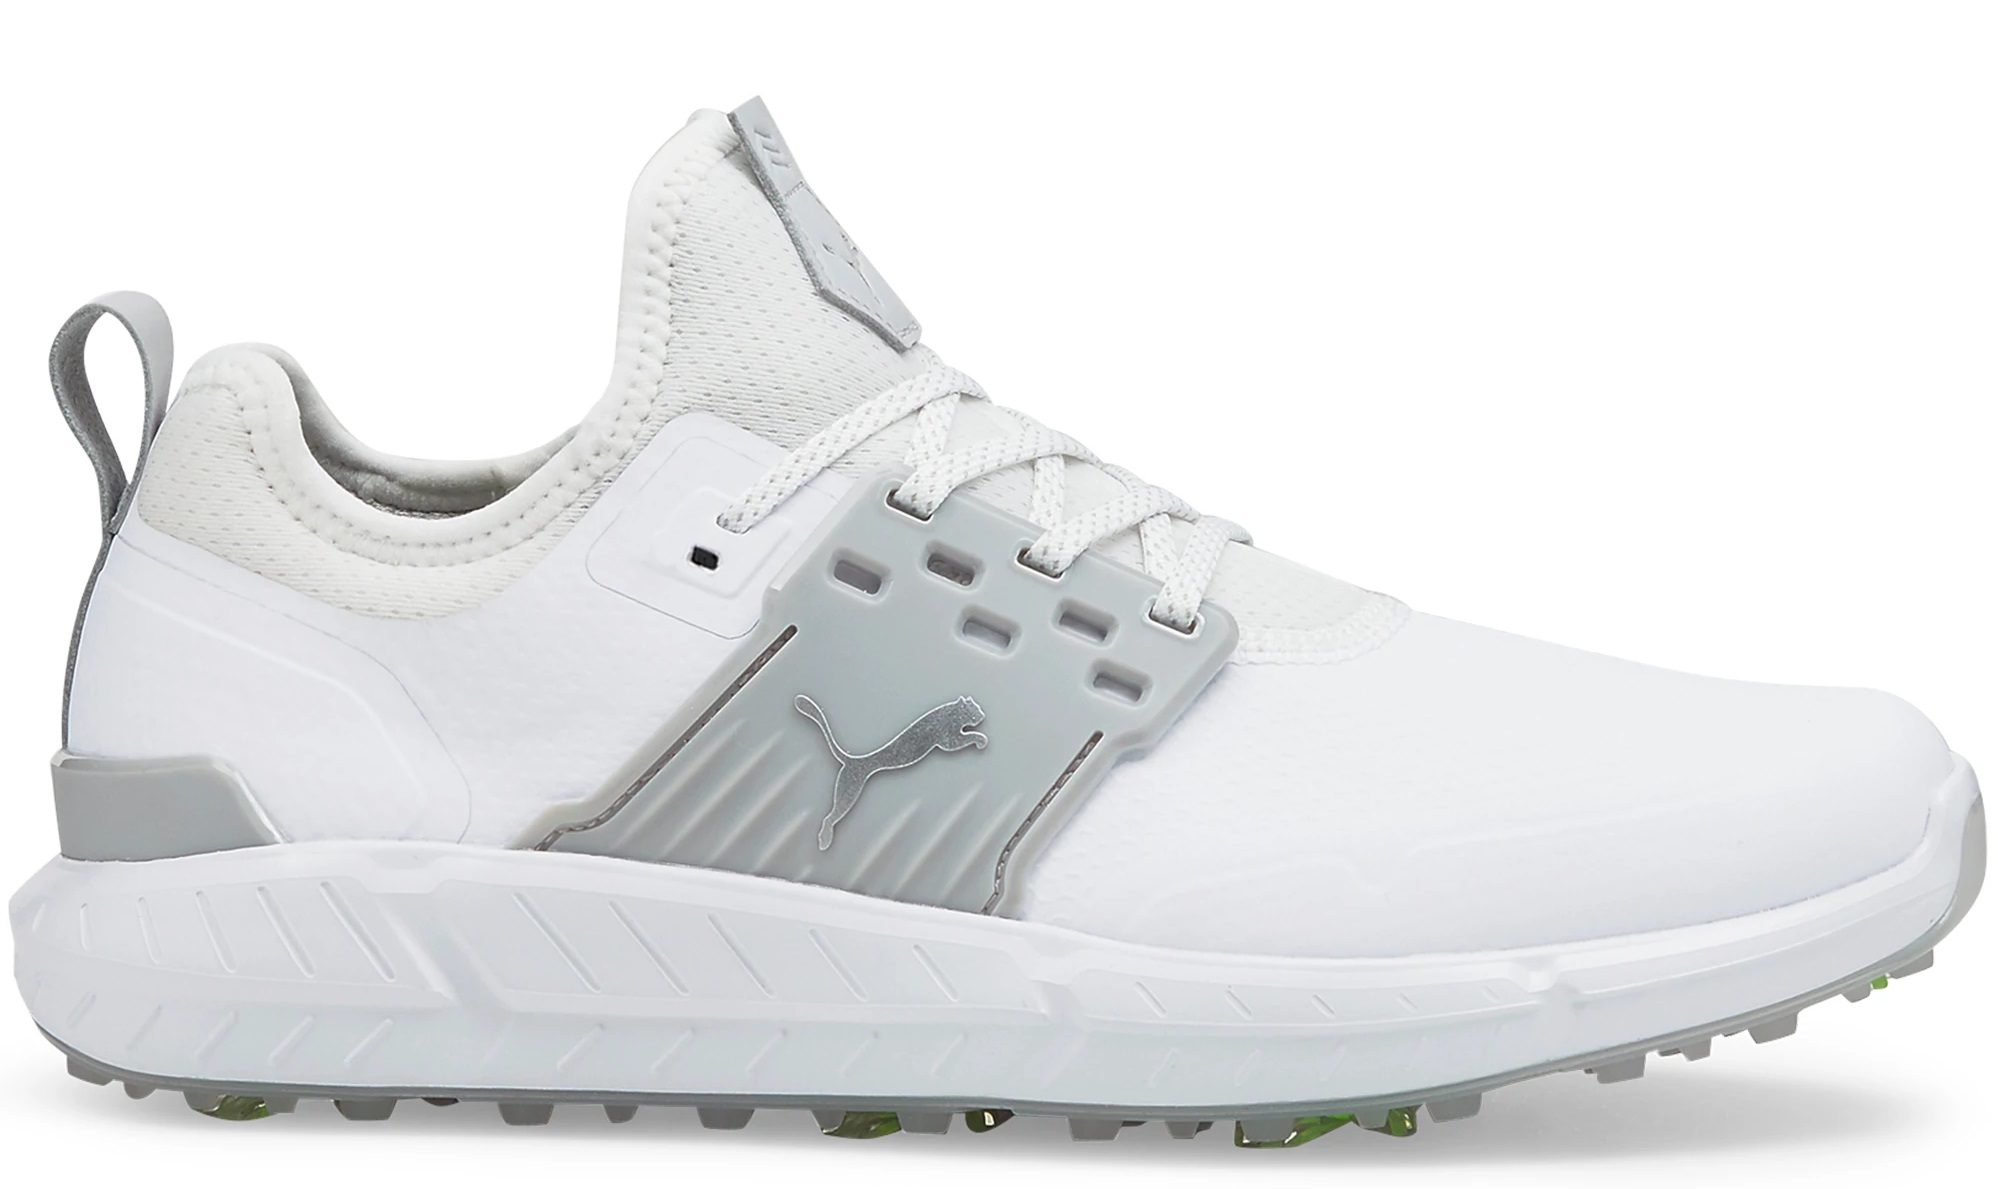 Puma Ignite Articulate White/Puma Silver/High Rise Men Golf Shoes Choose Size - image 1 of 3